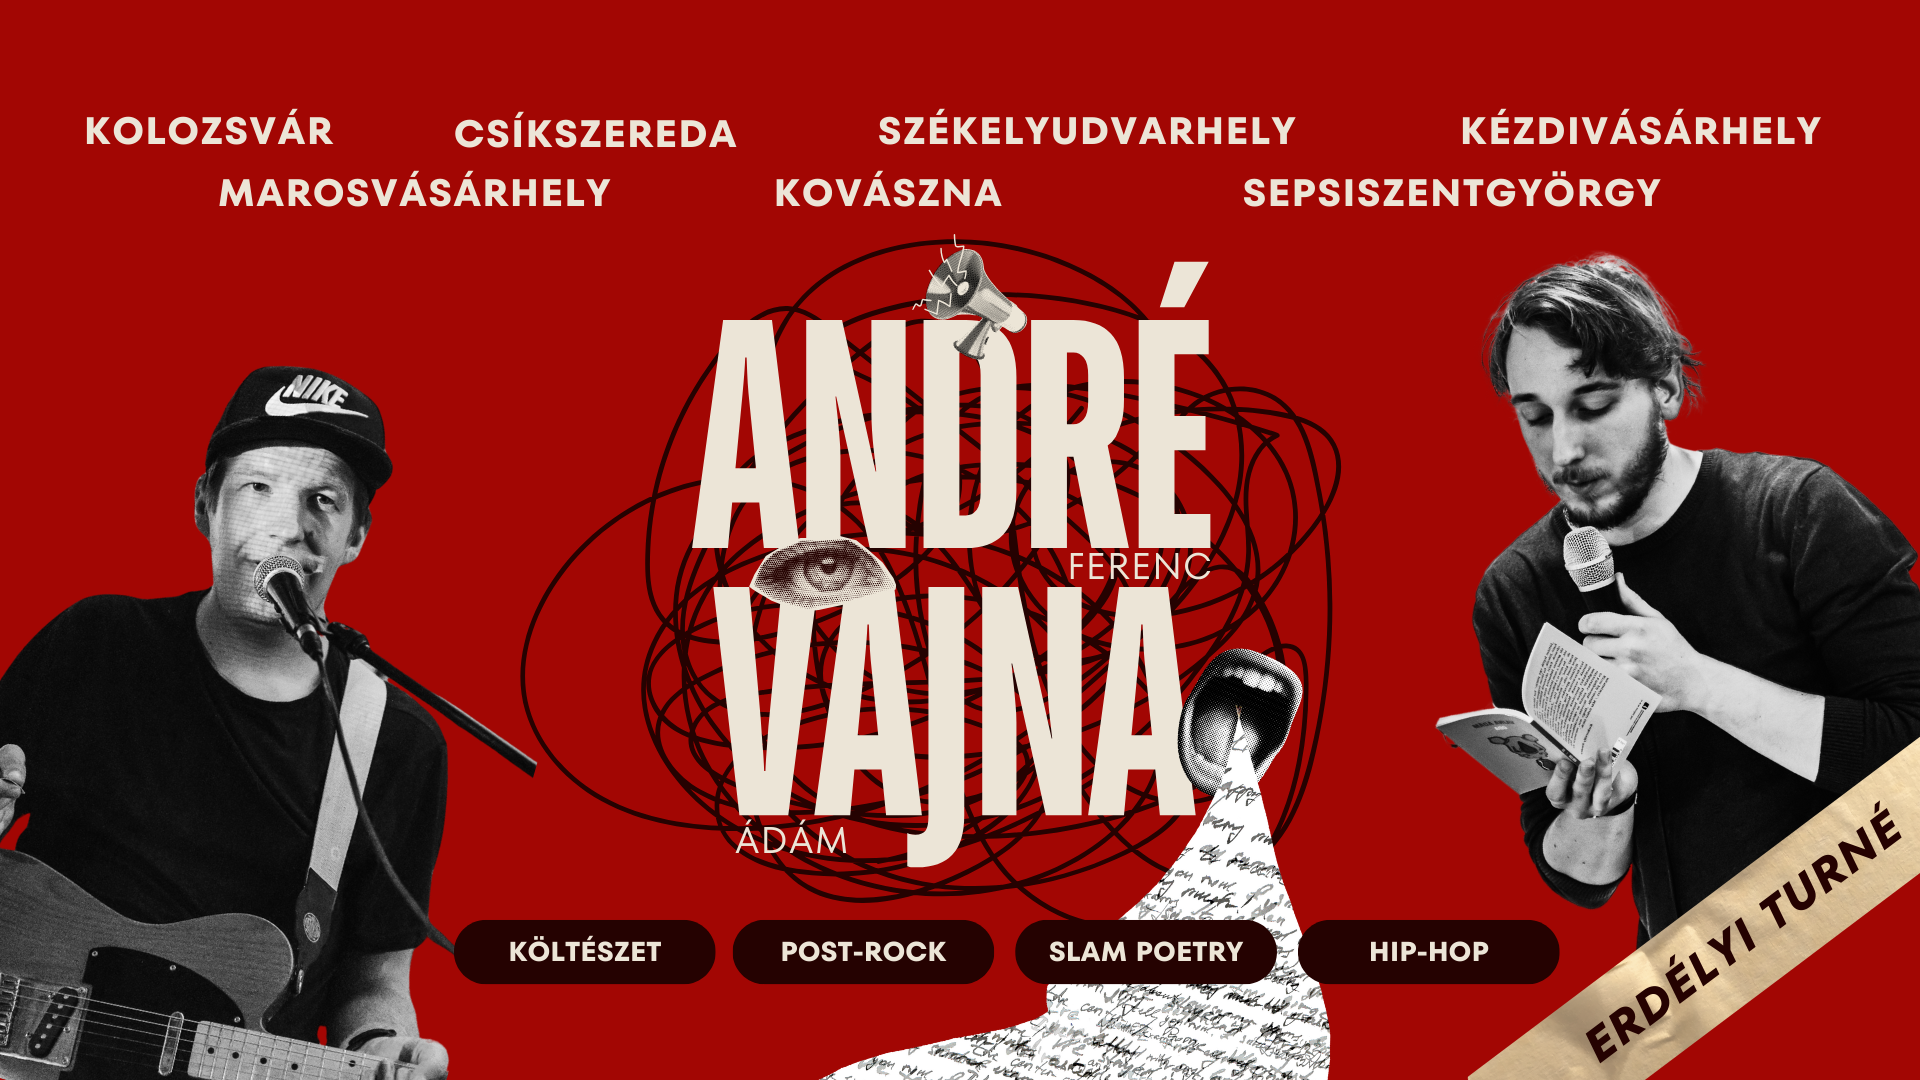 Költészet 21. századi köntösben – Háromszékre is ellátogat az AndréVajna produkció